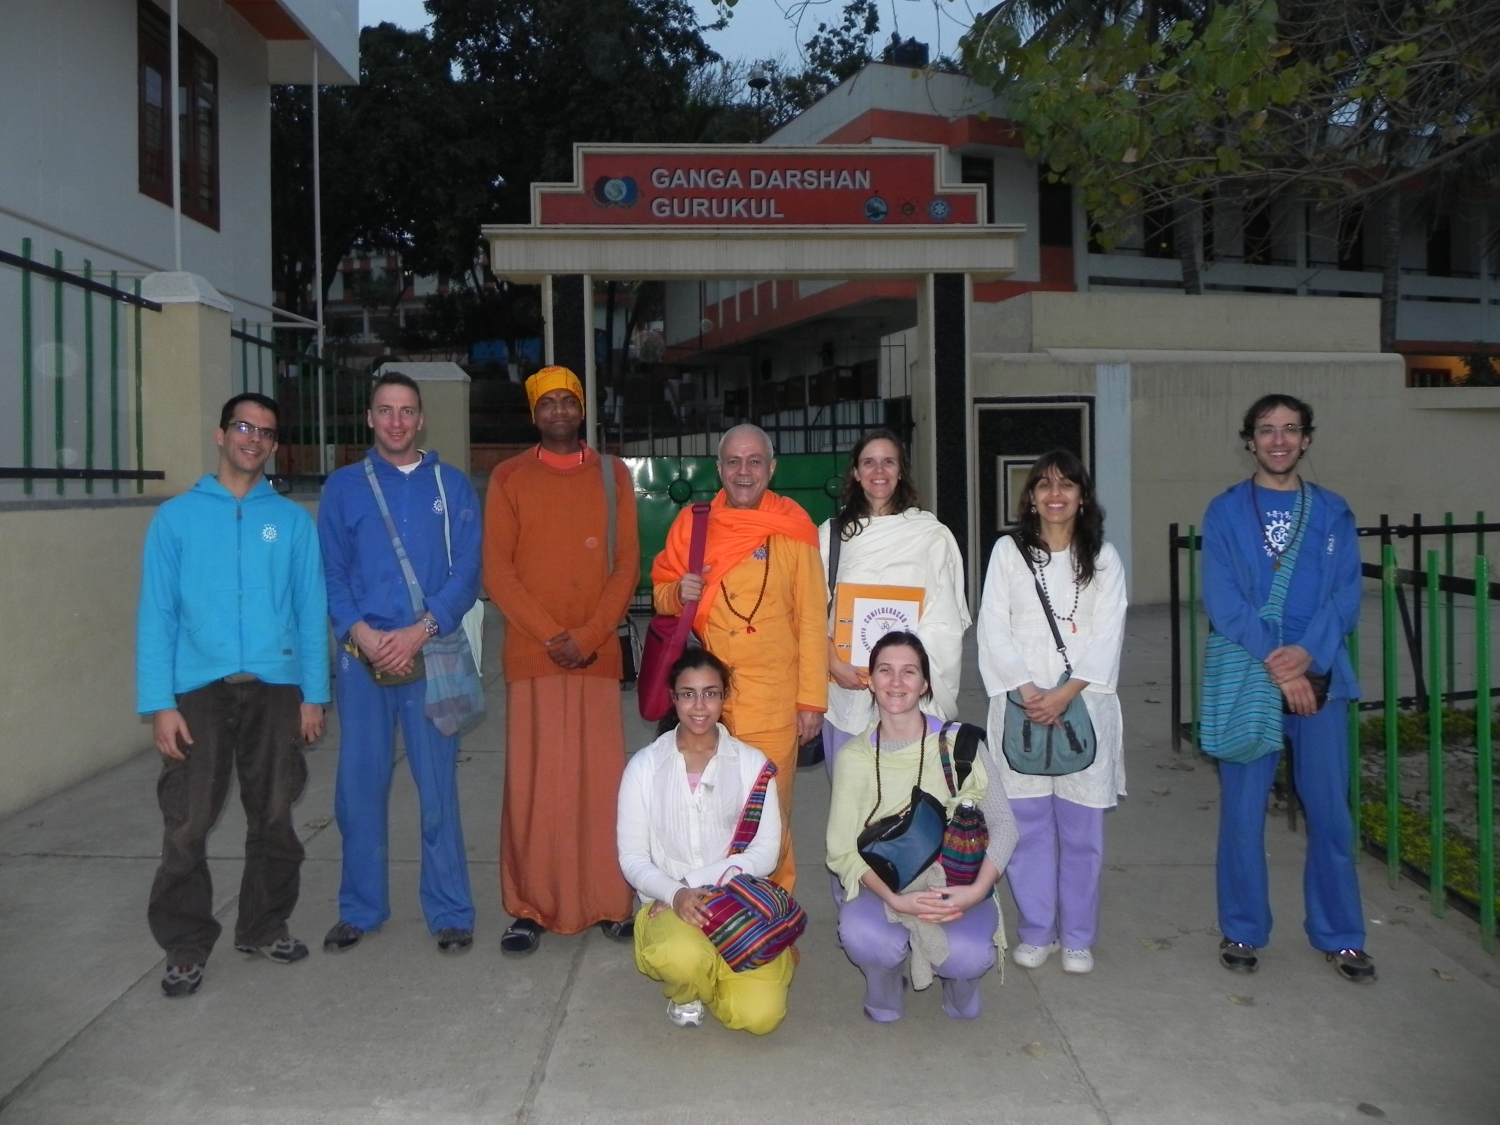 Encontro de H.H. Jagat Guru Amrta Sūryānanda Mahā Rāja com Svámin Súryaprakash e Svámin Niranjanánanda - Bihar School of Yoga, Munger, Índia – 2011